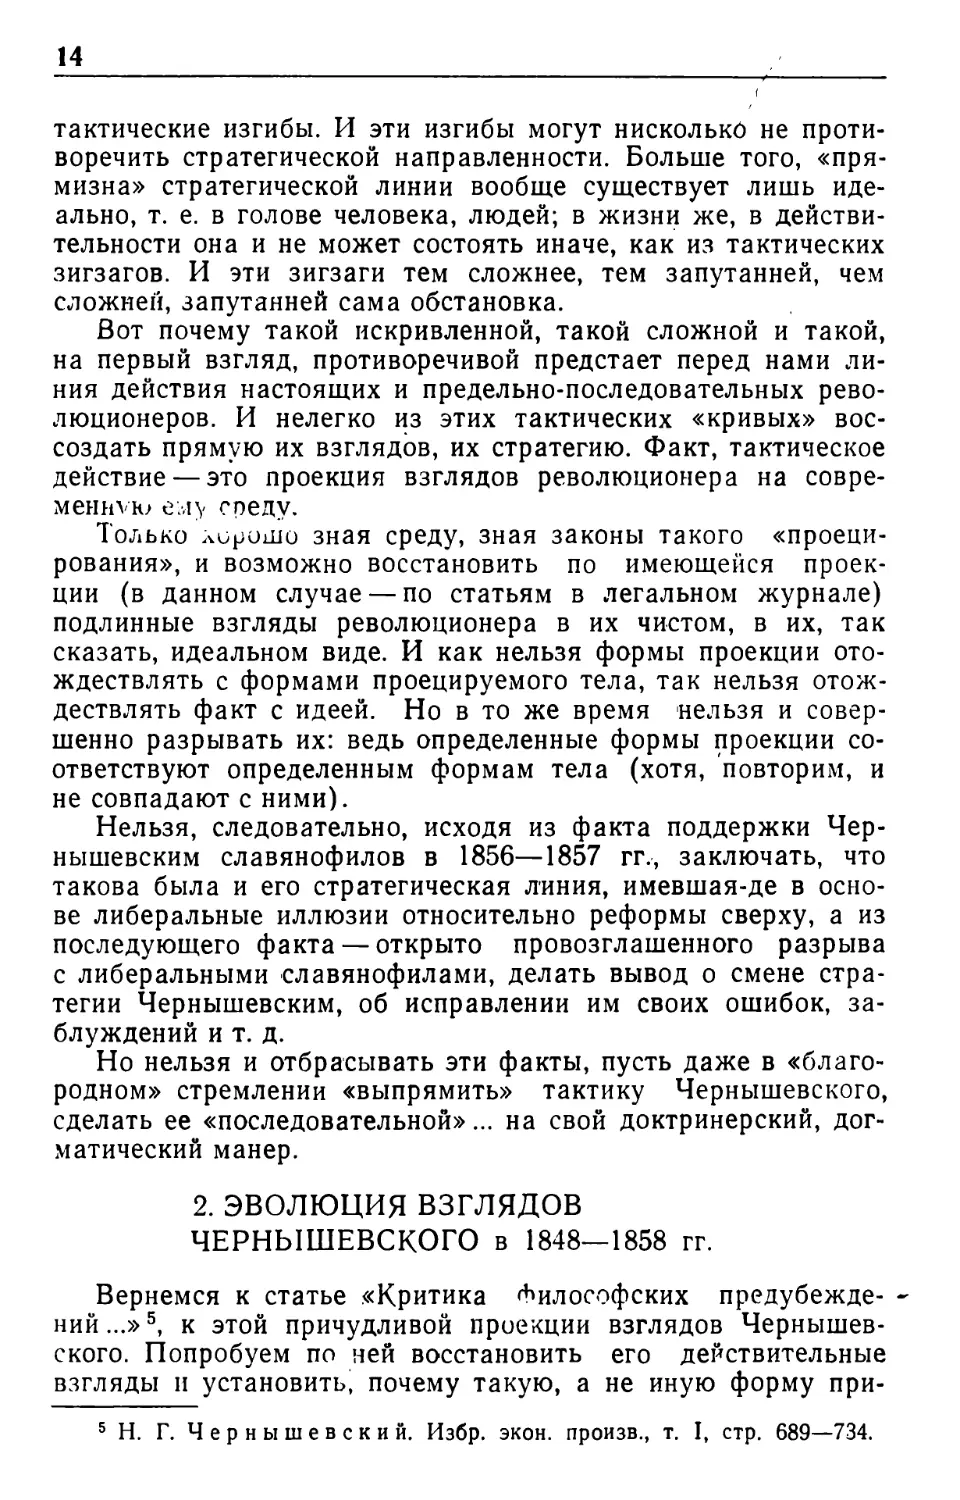 2. Эволюция взглядов Чернышевского в 1848—1858 гг